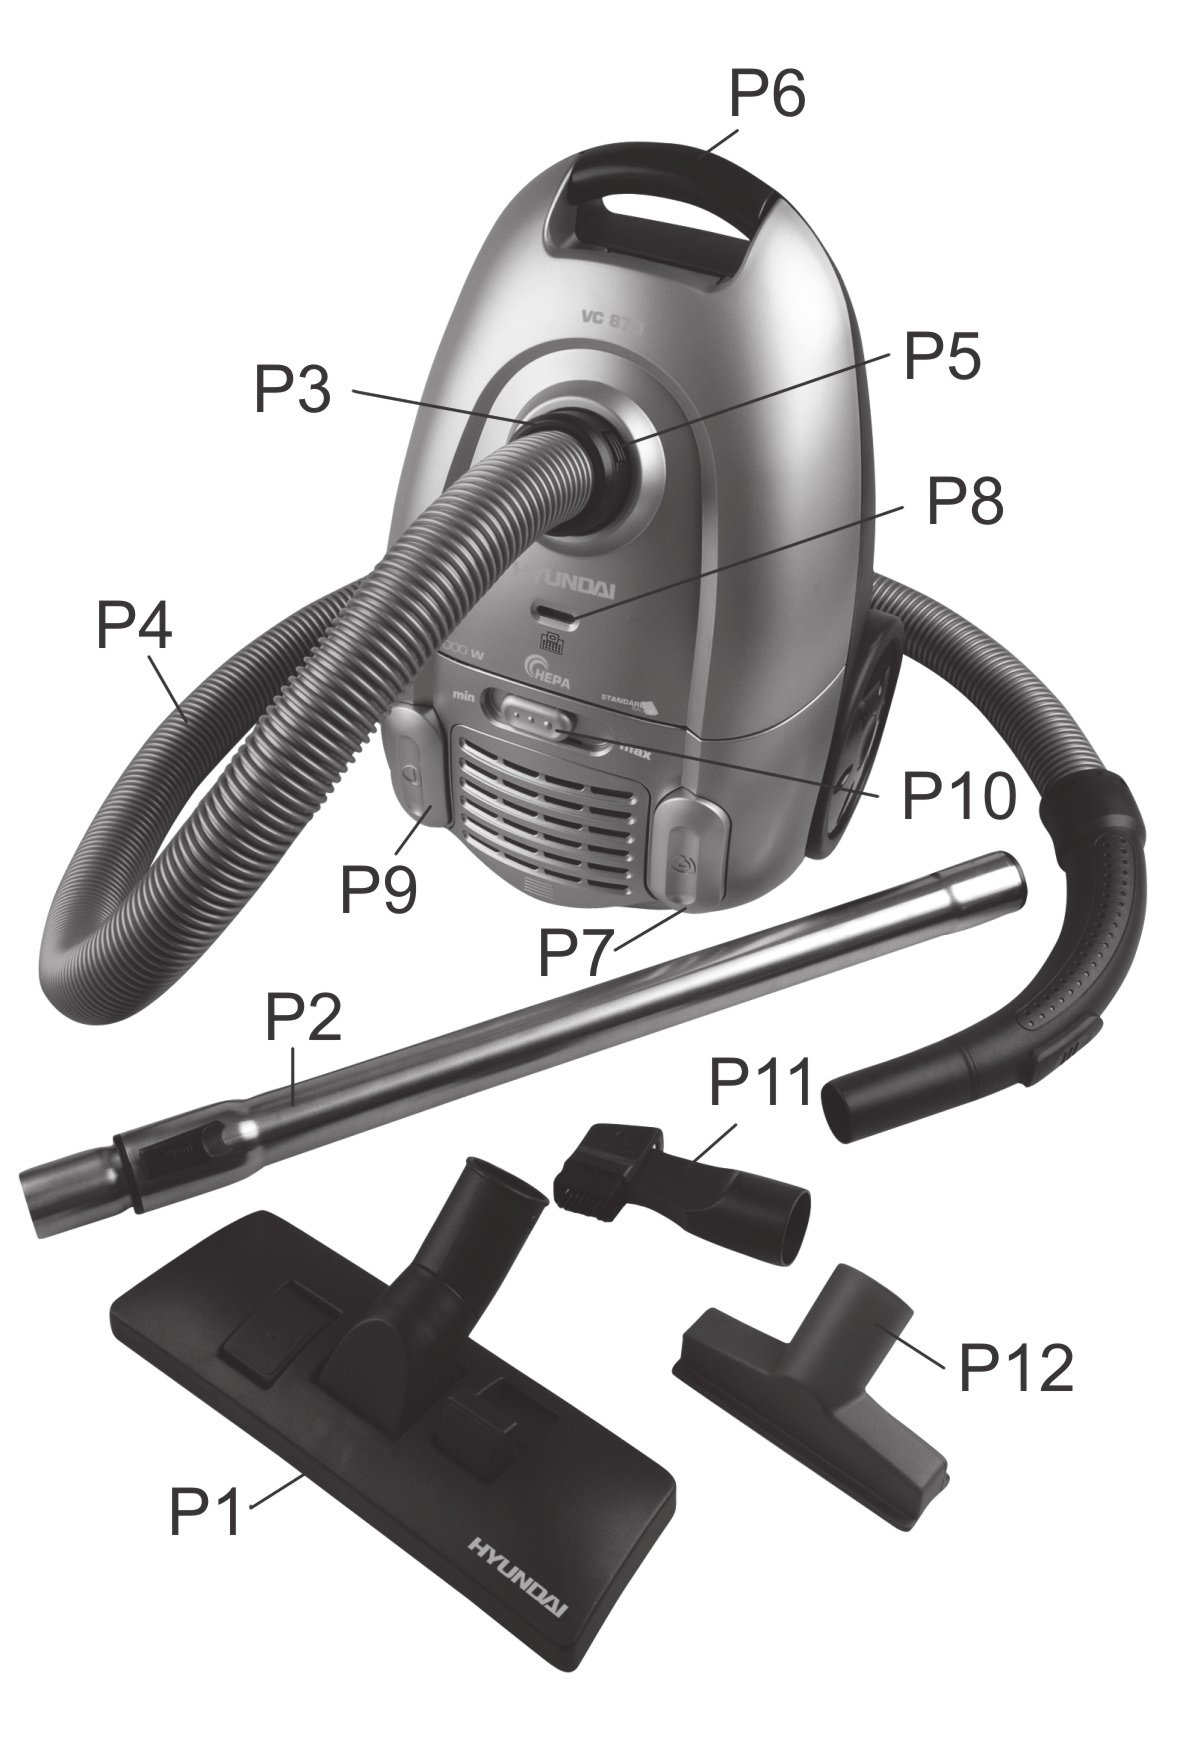 Description of the controls P1 P2 P3 P4 P5 P6 P7 P8 P9 P10 P11 P12 Floor nozzle Telescopic tube Suction hose connection Suction hose Hose grip button